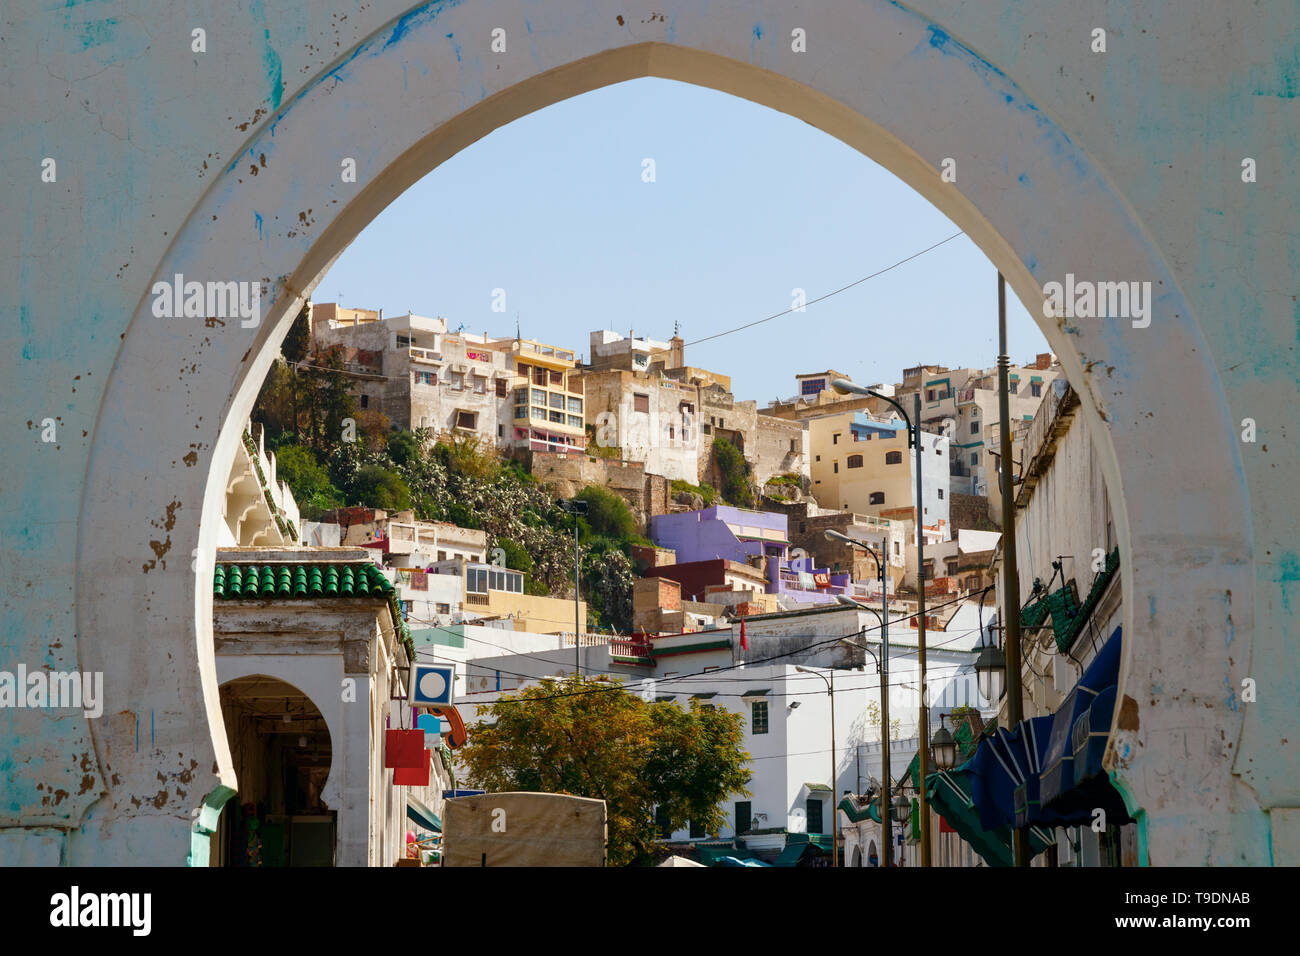 La collina con le case e le strade di moulay idriss zerhoun in una giornata di sole, visto attraverso il cancello di ingresso della città, Marocco. Foto Stock